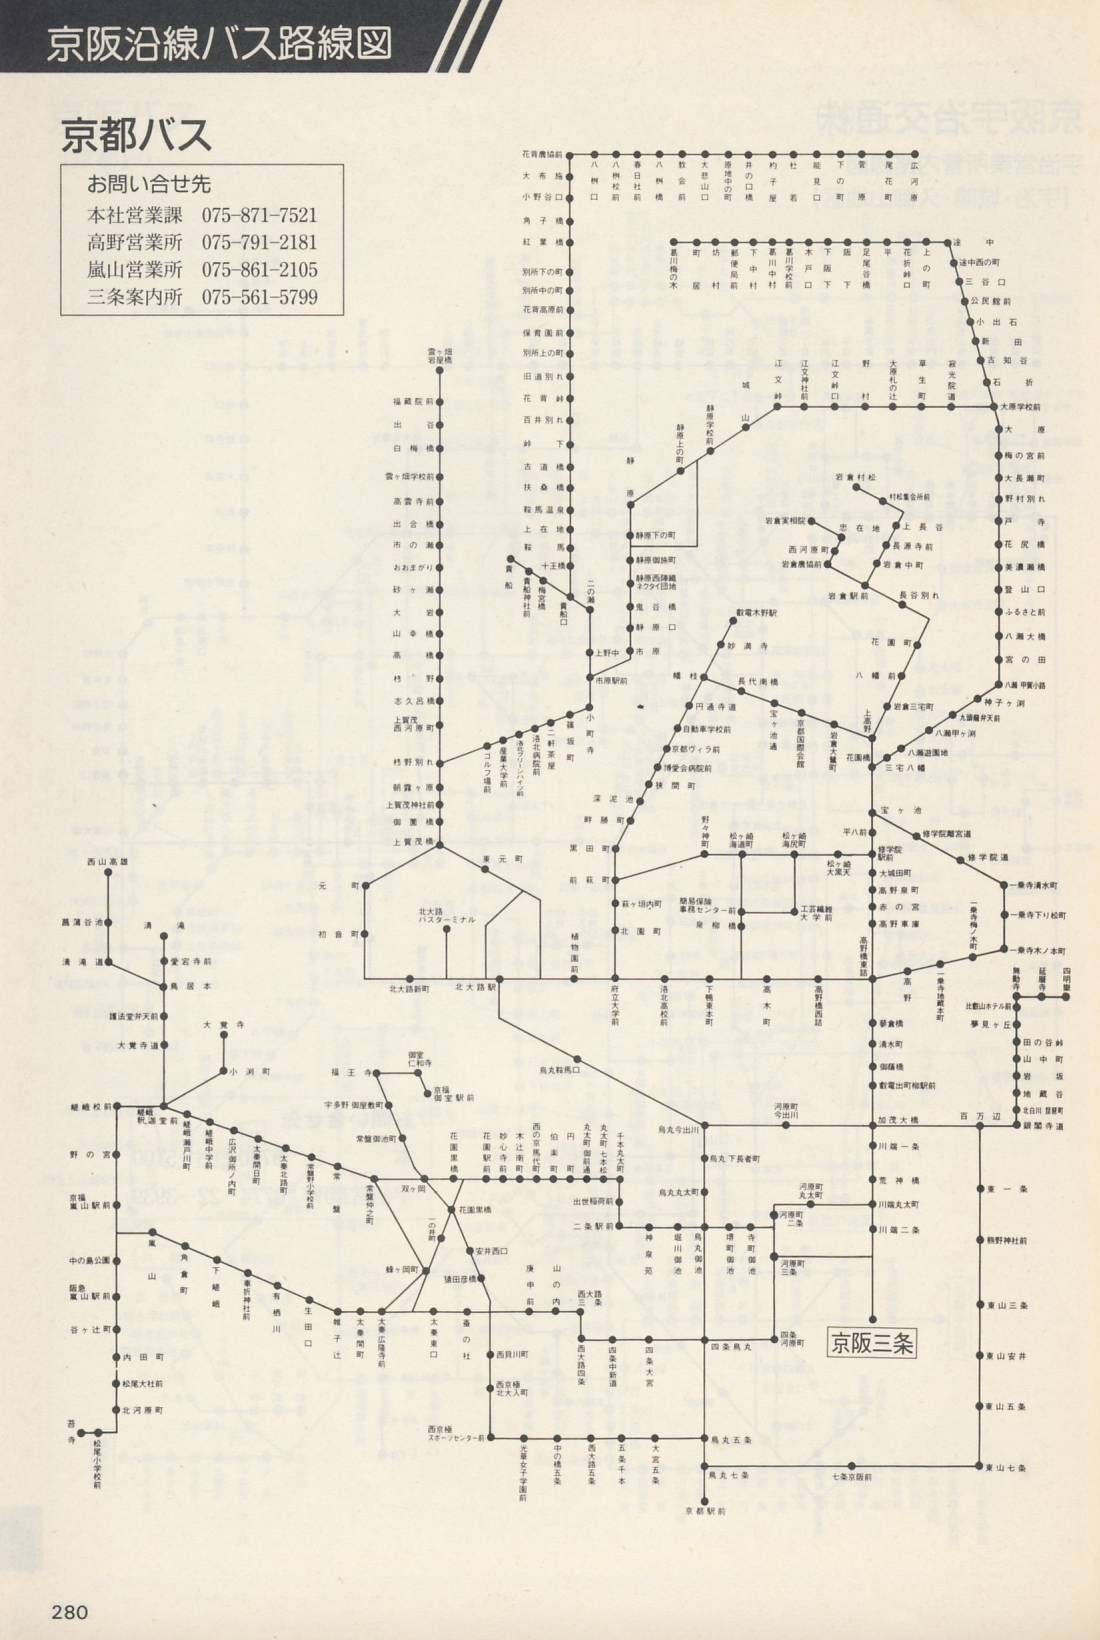 1987-06-01改正_京阪電気鉄道_冊子時刻表_280(京都バス路線図)